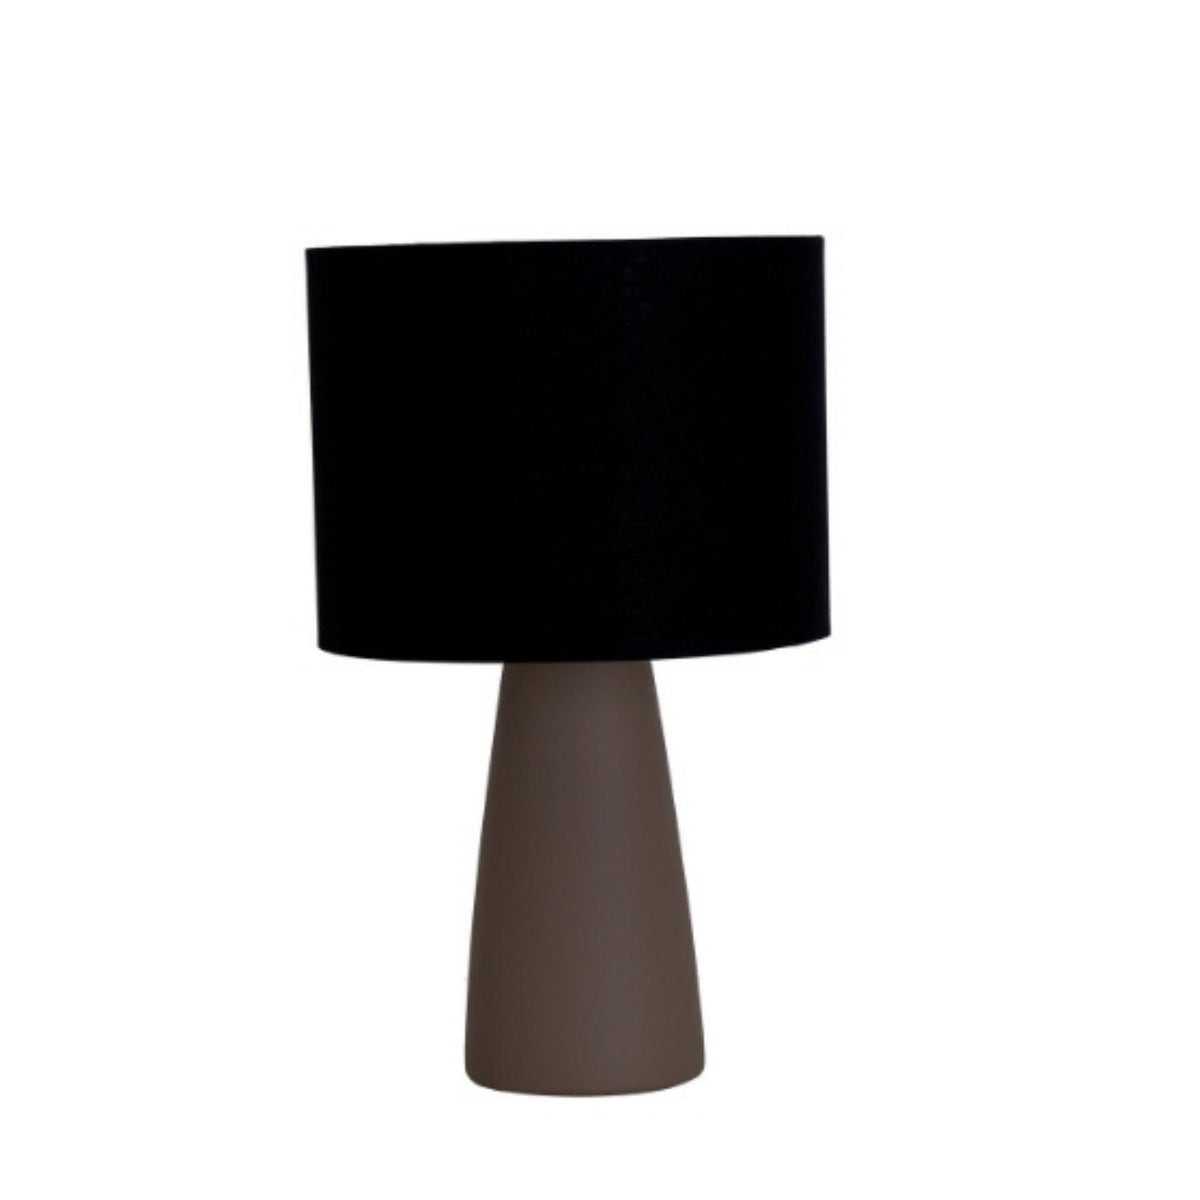 Geo Contemporary - Ingá Table Lamp - AB237 - Ingá Table Lamp | Geo ContemporaryBrown